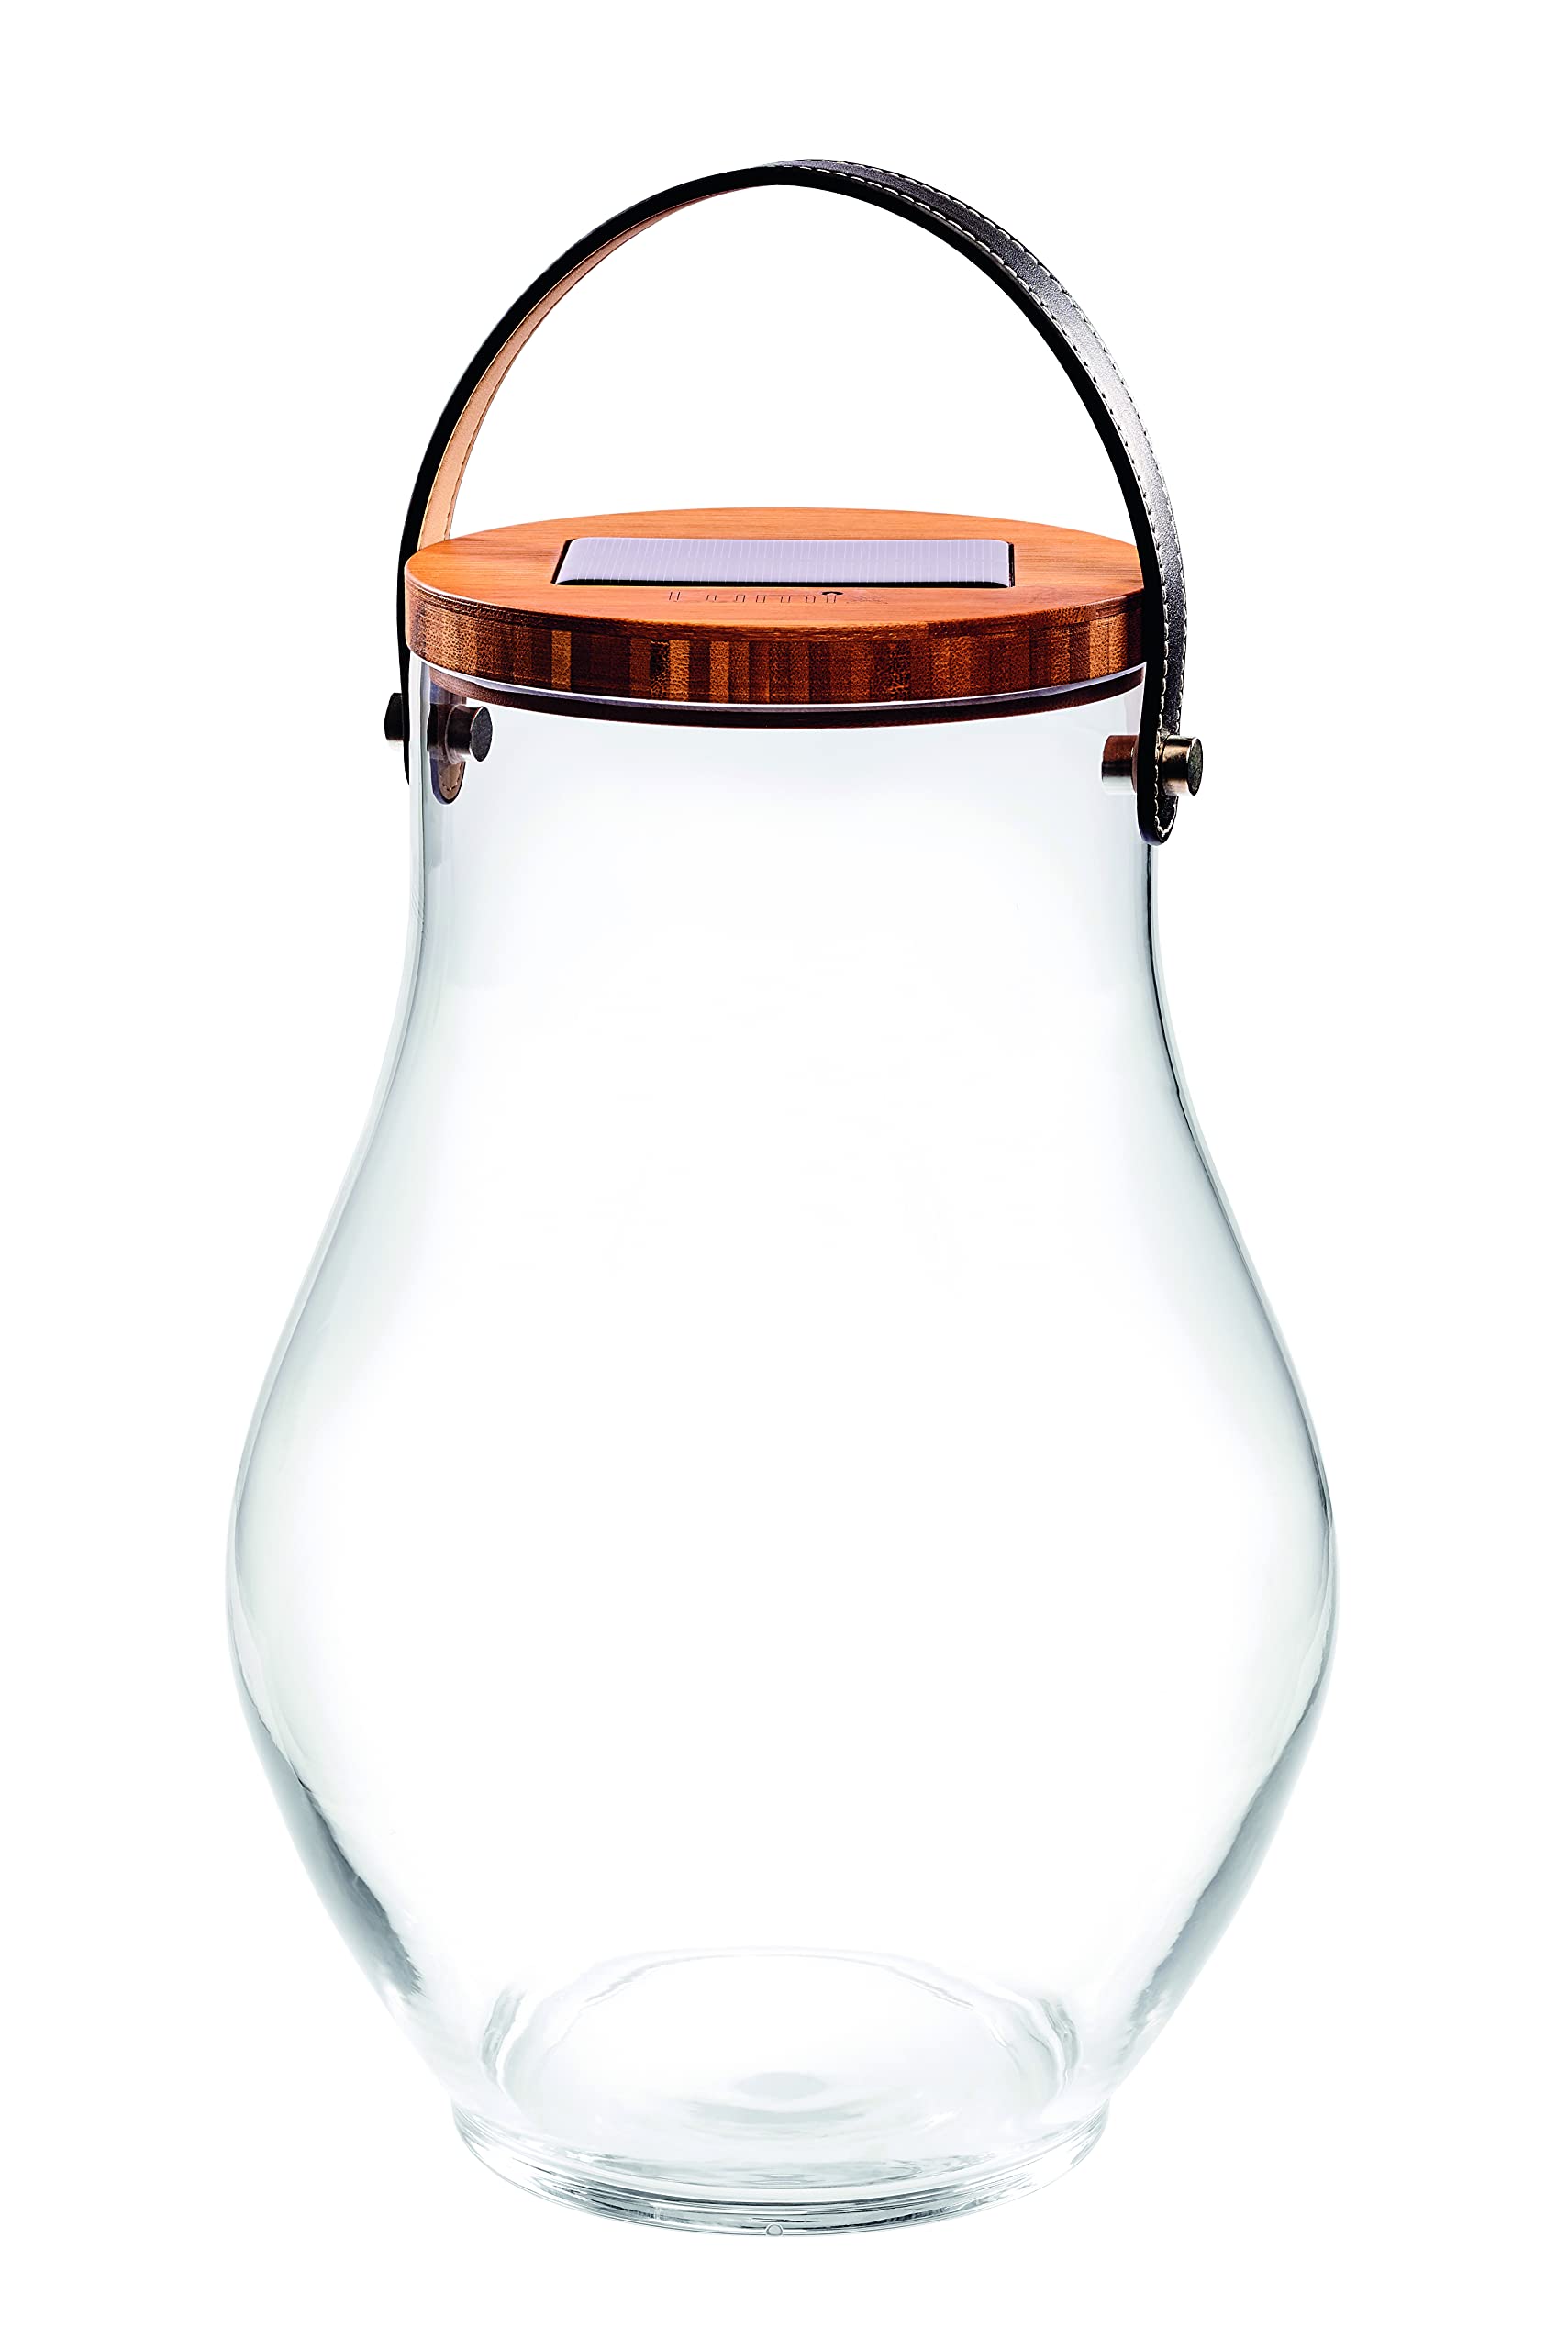 Lumix® LED Deco Glass Bold Solarlicht Dekoleuchte Sonnenglas Solarlampe mit Bambusdeckel Mundgeblasenes Glas Dekoration Warmweiß inkl. USB-Port Leder Trageriemen In & Outdoor 22520